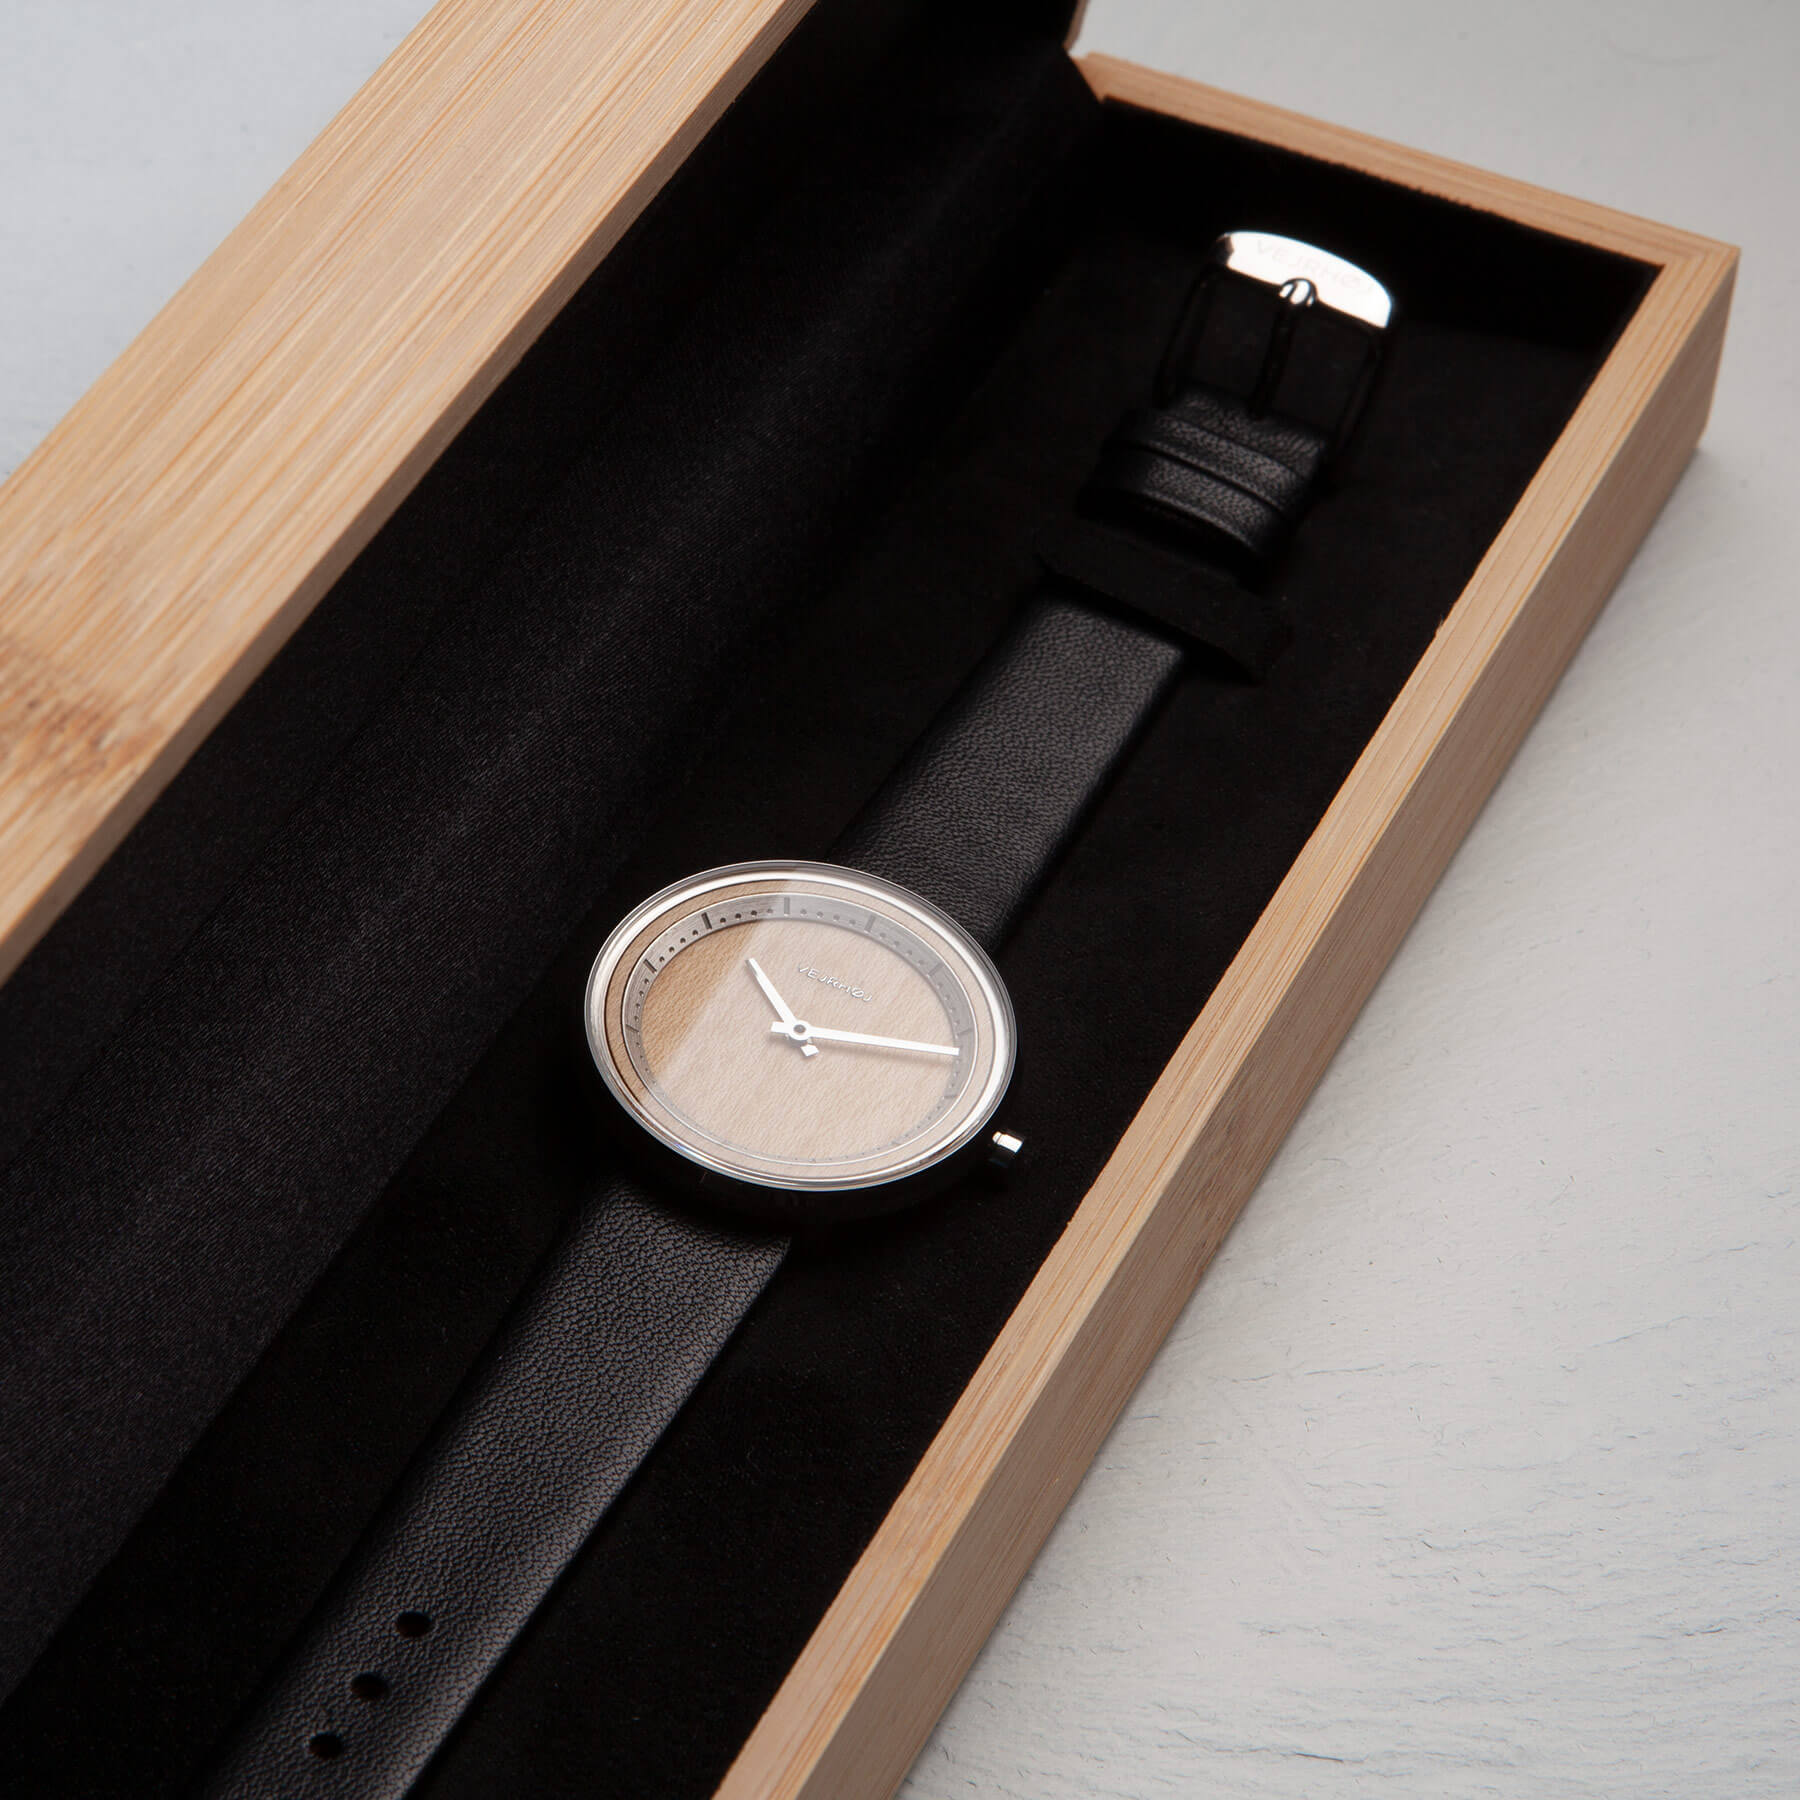 時計が木箱に中に置いてある。ウェアホイ腕時計